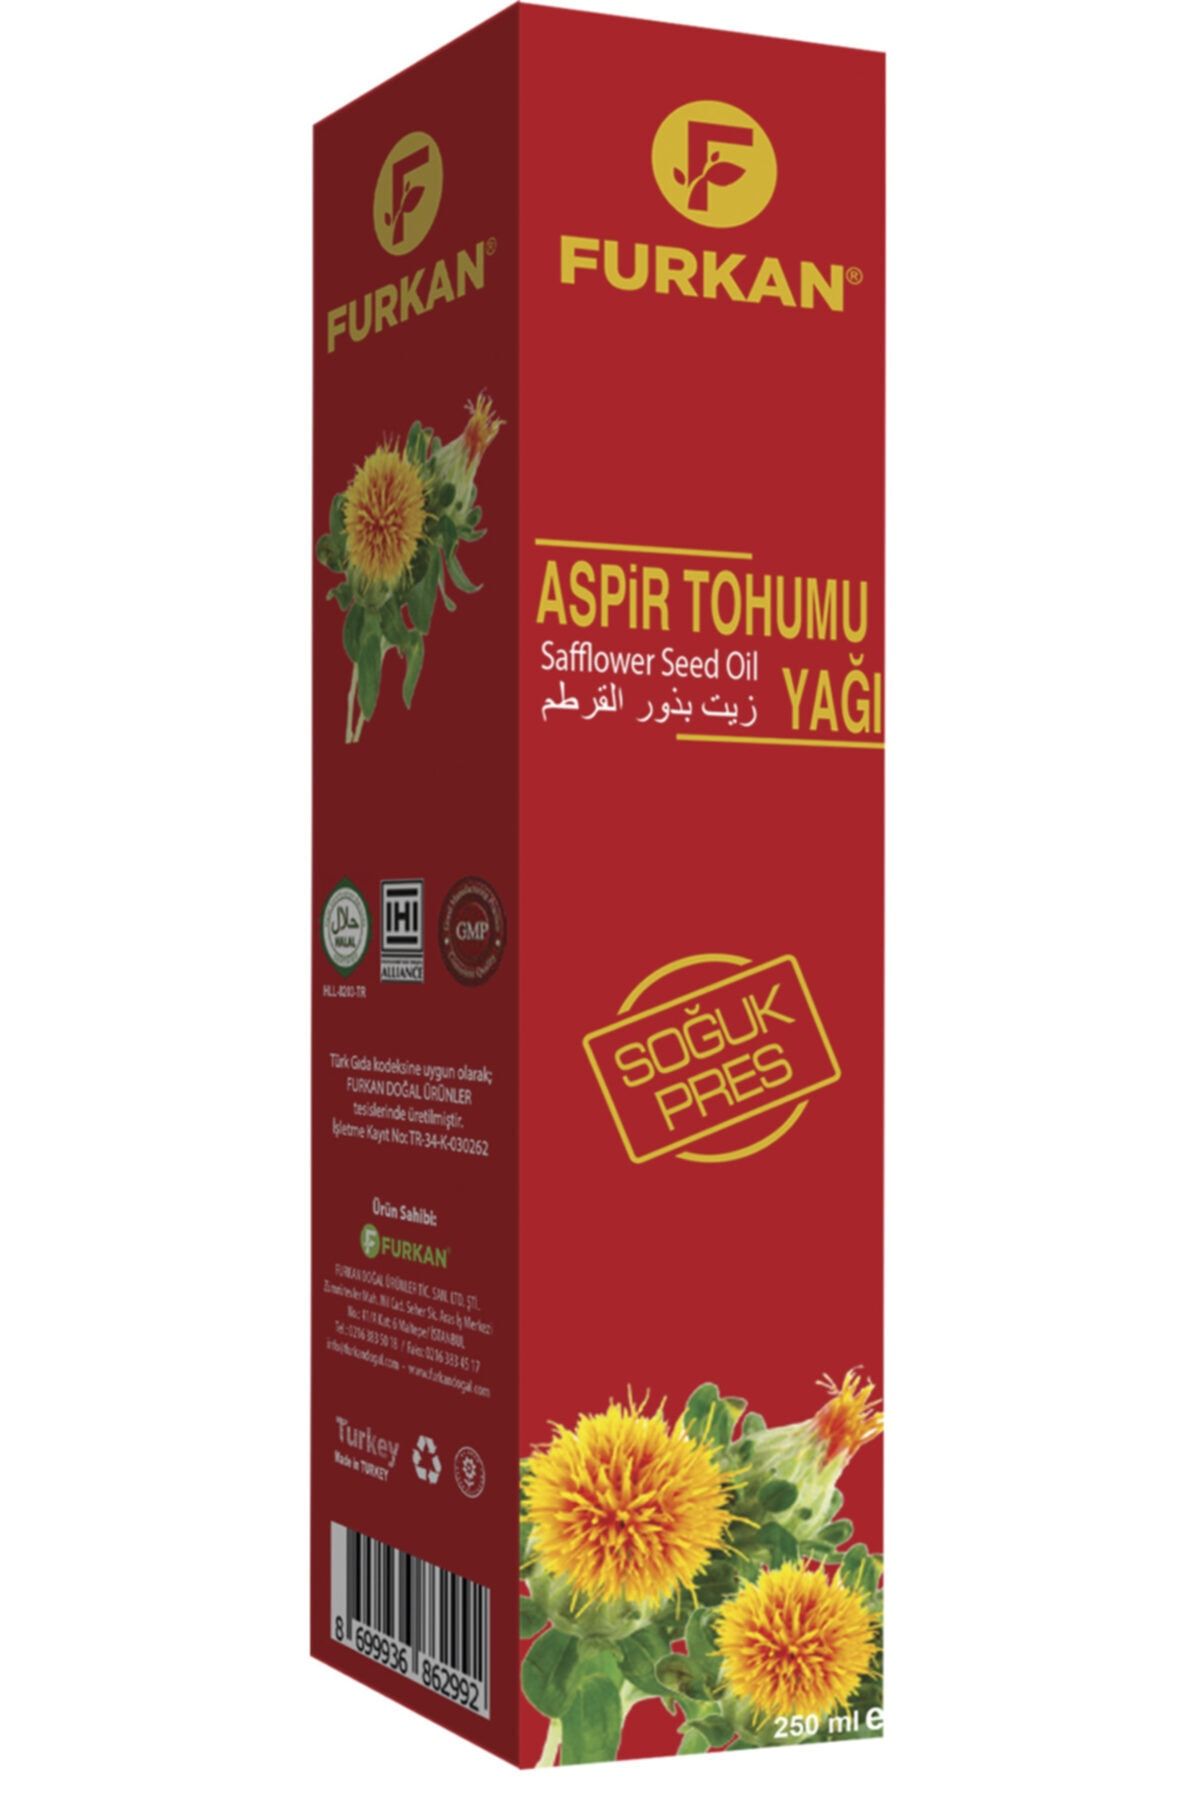 Aspir Tohumu Yağı - 250 Cc_0